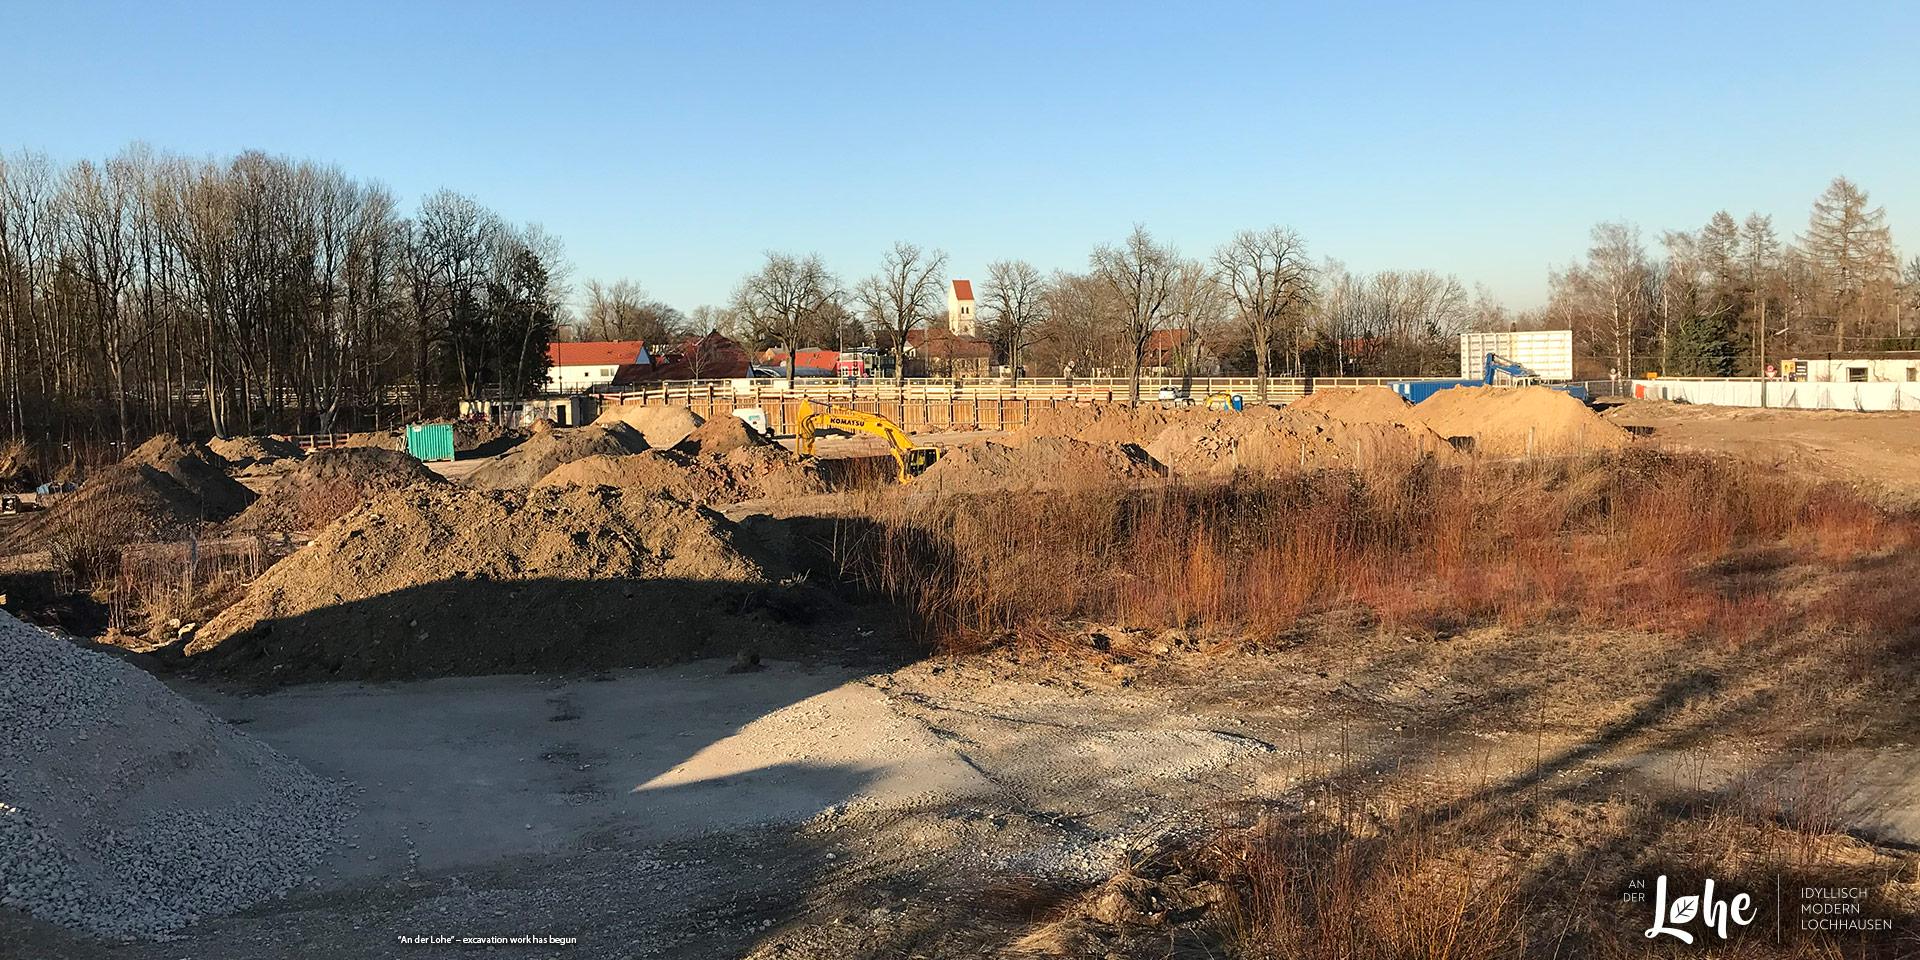 “An der Lohe” in Munich-Lochhausen: excavation work has begun